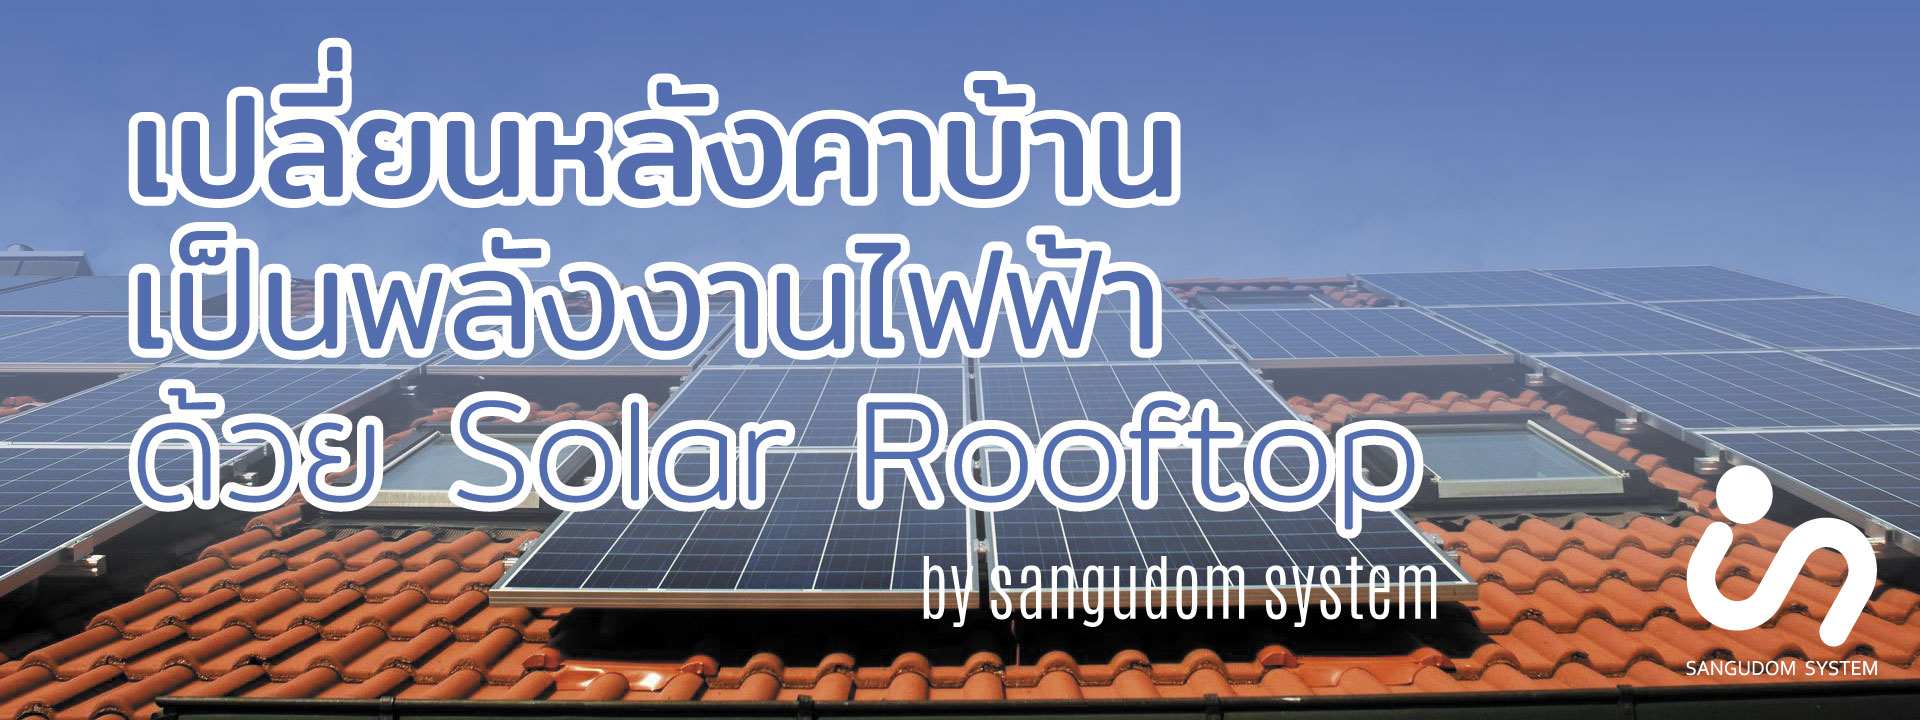 เปลี่ยนหลังคาบ้าน เป็นพลังงานไฟฟ้า ด้วย solar roofttop by sangudom